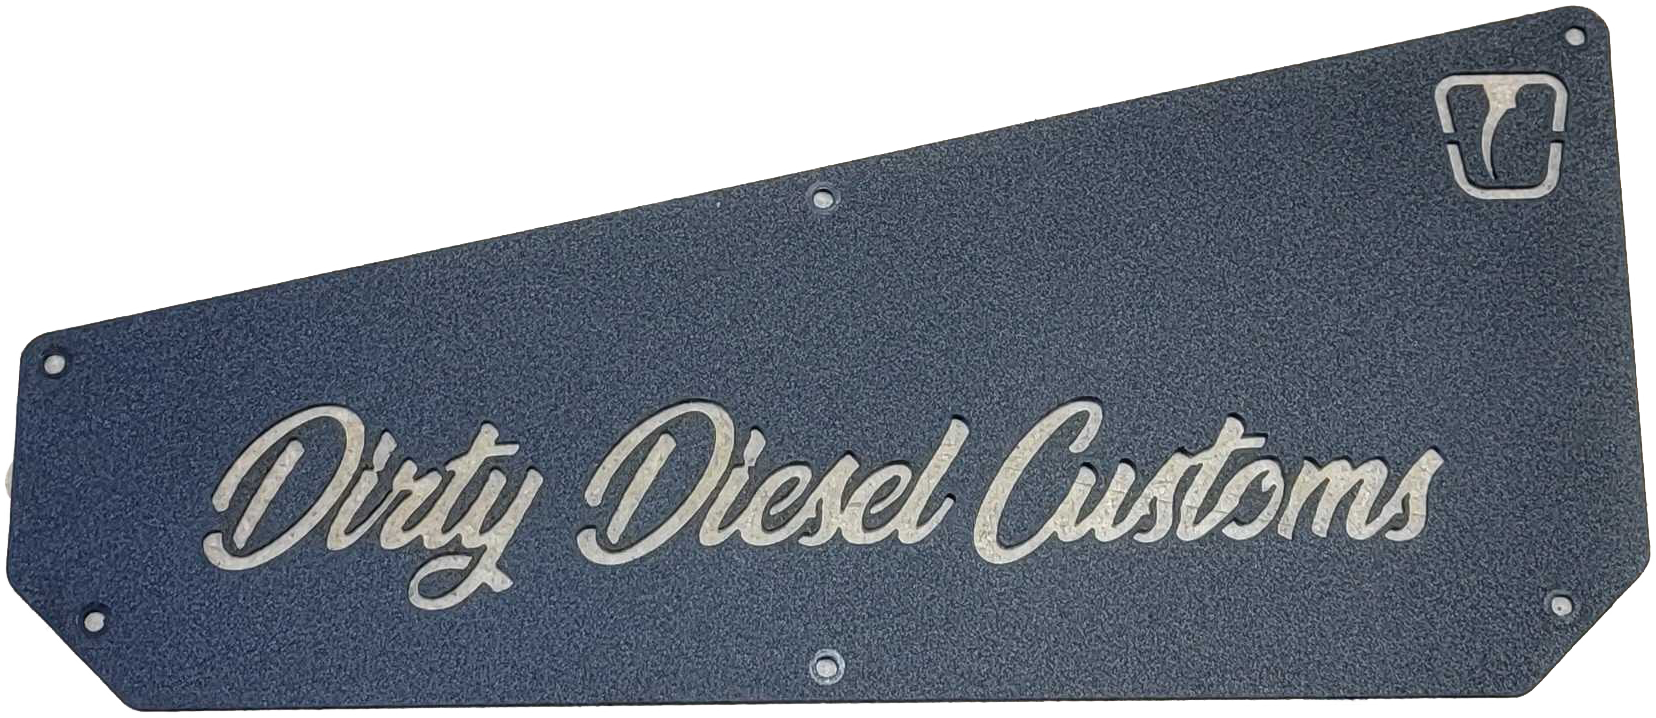 DIRTY Standard Height Mud Flaps-Mud Flap-Trigger Industries-Dirty Diesel Customs